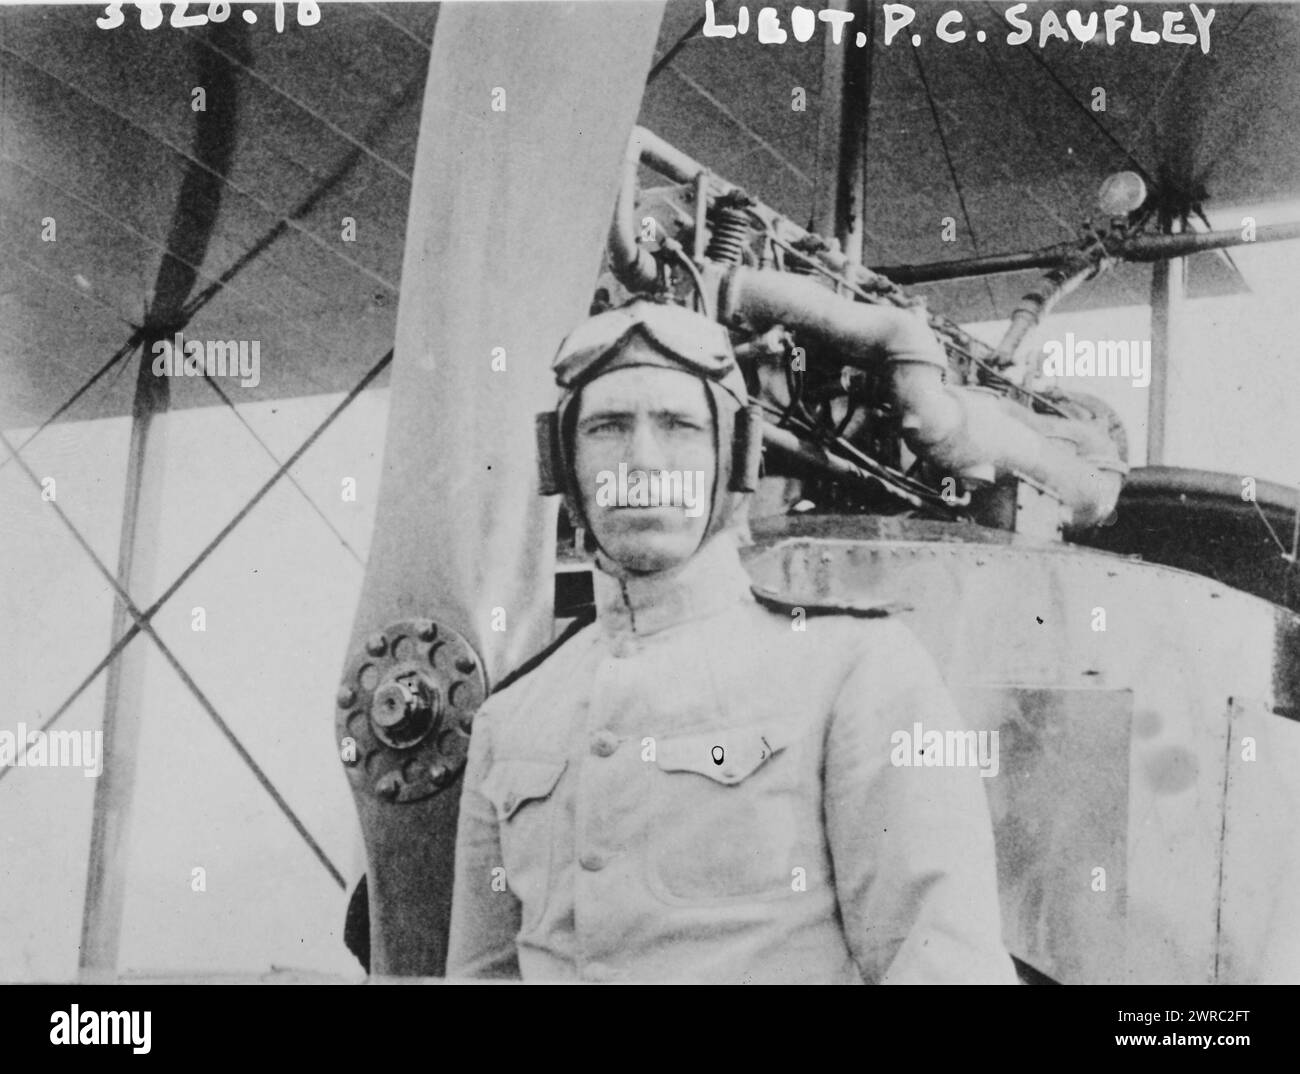 Tenente P.C. Saufley, la fotografia mostra il pioniere dell'aviazione della Marina degli Stati Uniti Richard Caswell Saufley (1884-1916)., tra ca. 1915 e ca. 1920, Glass negative, 1 negativo: Glass Foto Stock